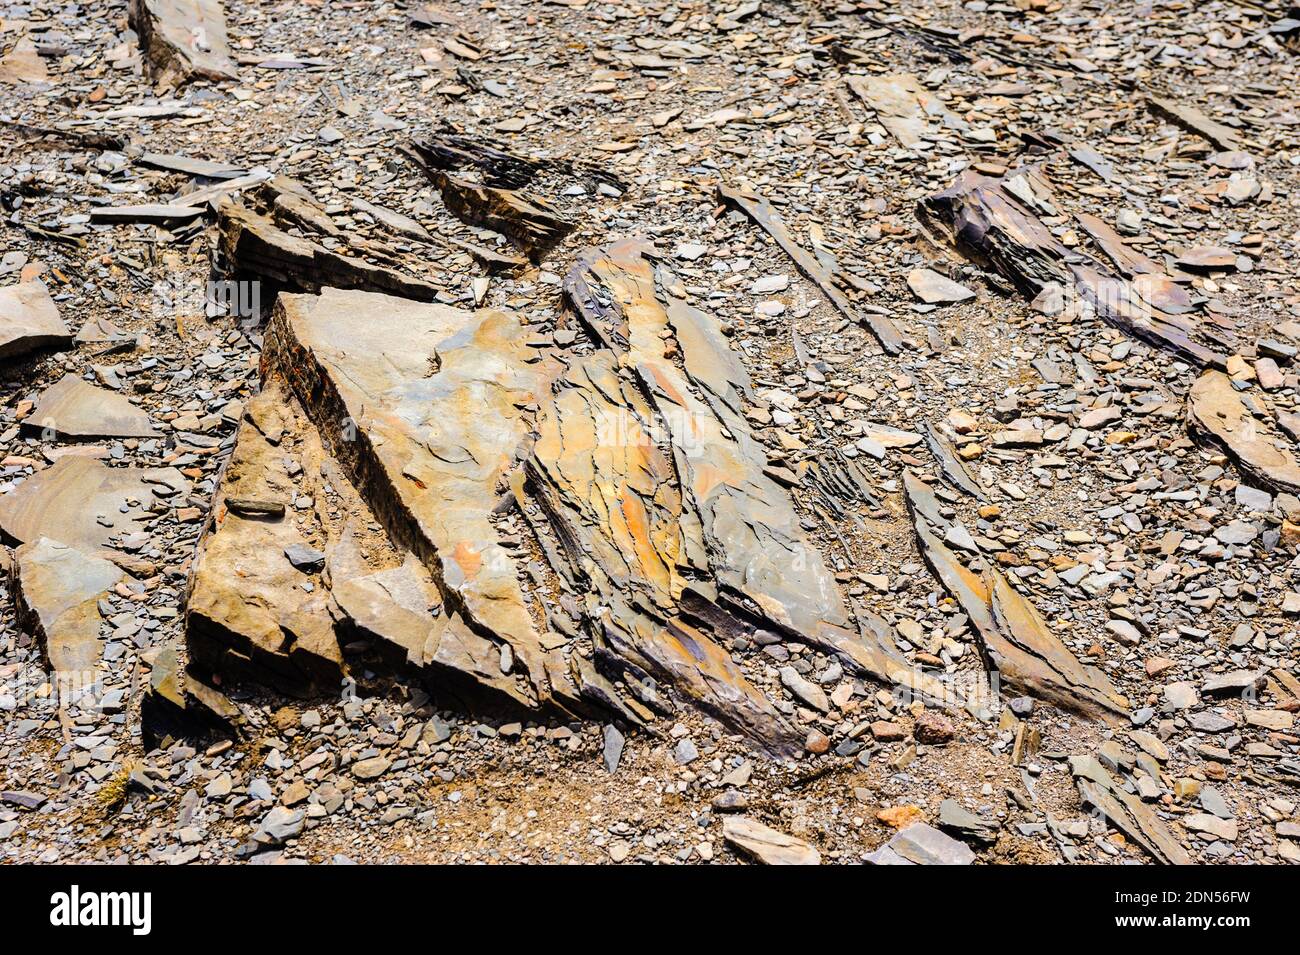 Primo piano di rocce stratificate e ghiaia sul terreno. Foto Stock